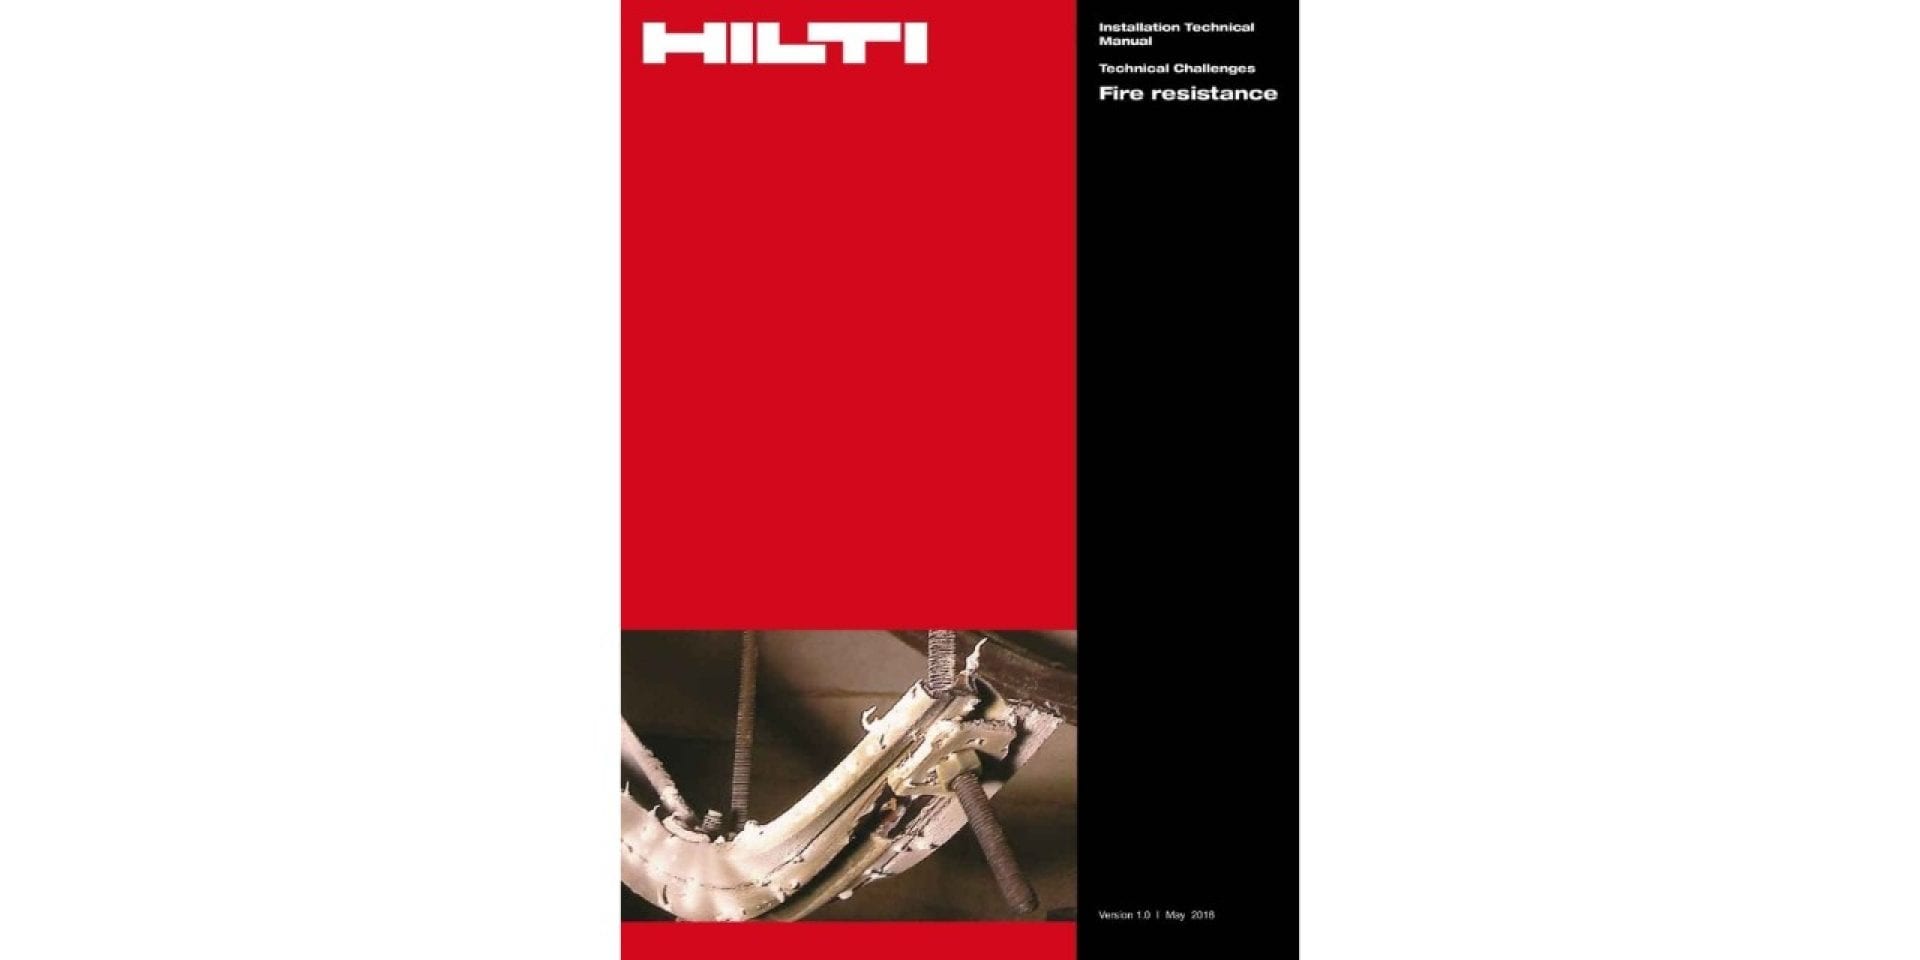 Hilti fire resistance manual